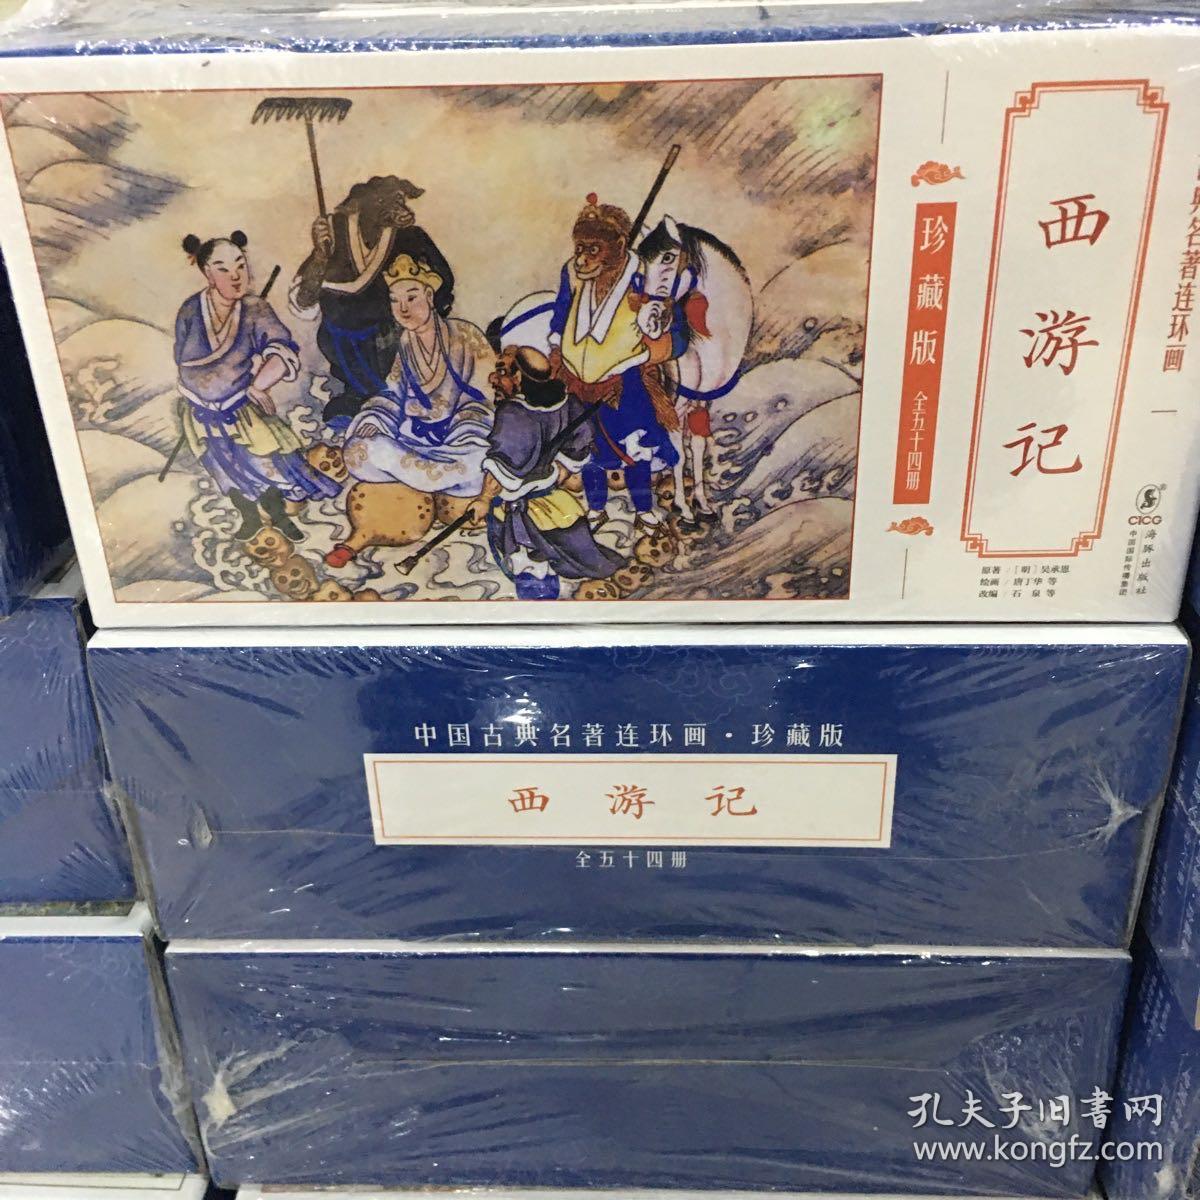 中国古典名著连环画 珍藏版 西游记  （全54册）